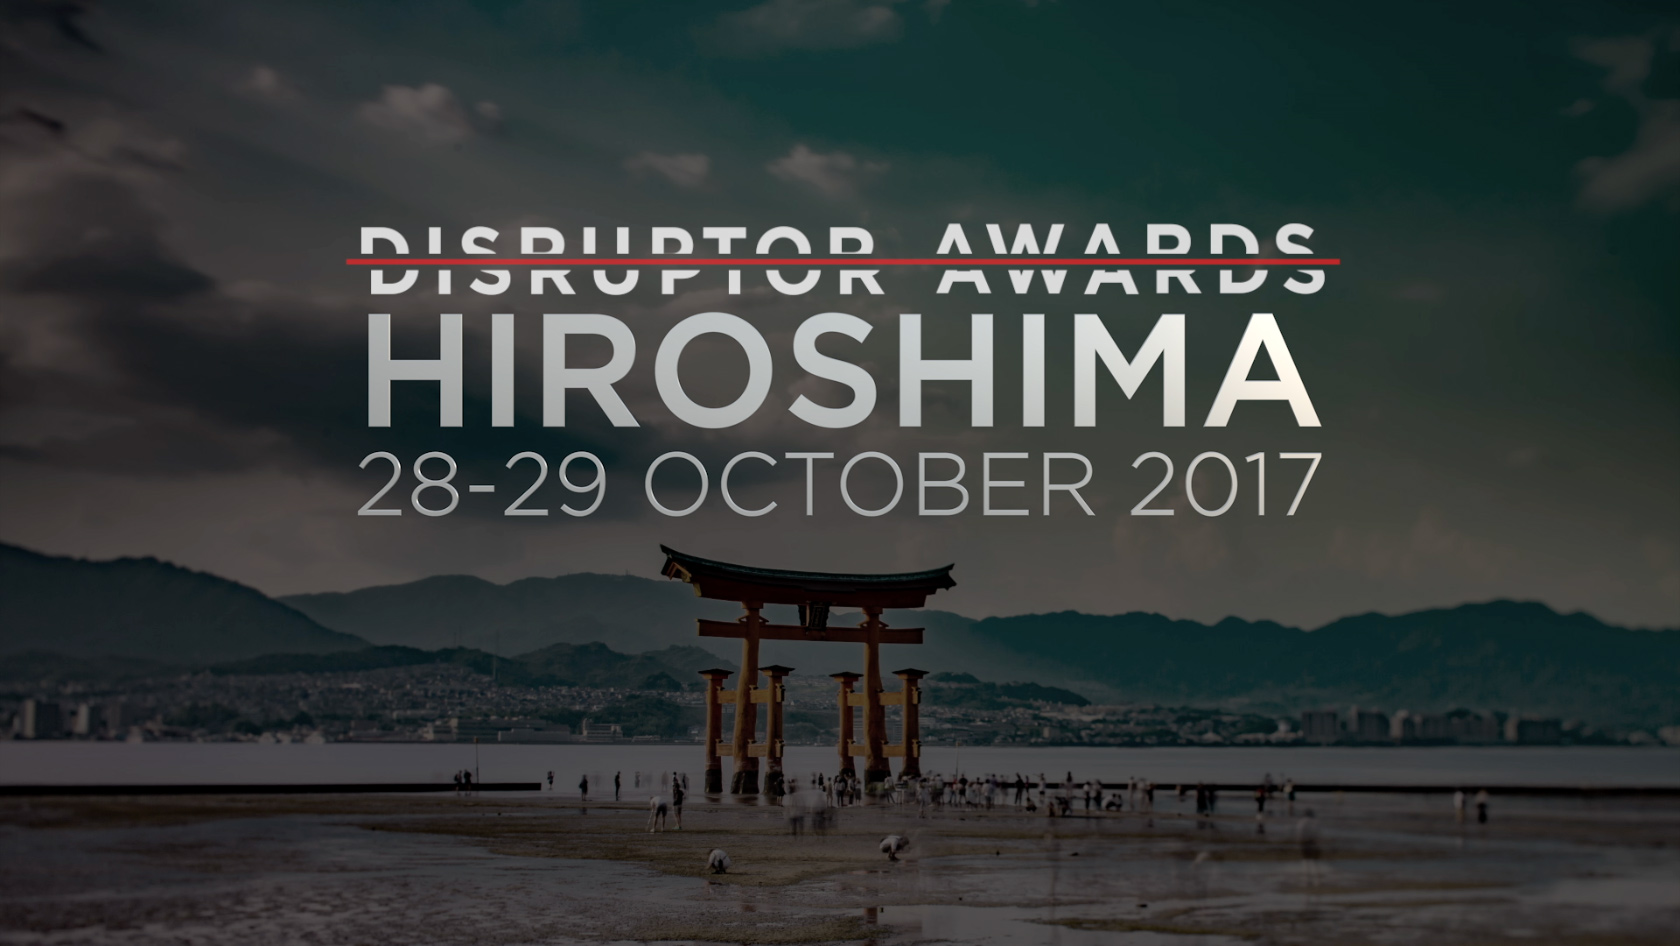 Disruptor Hiroshima